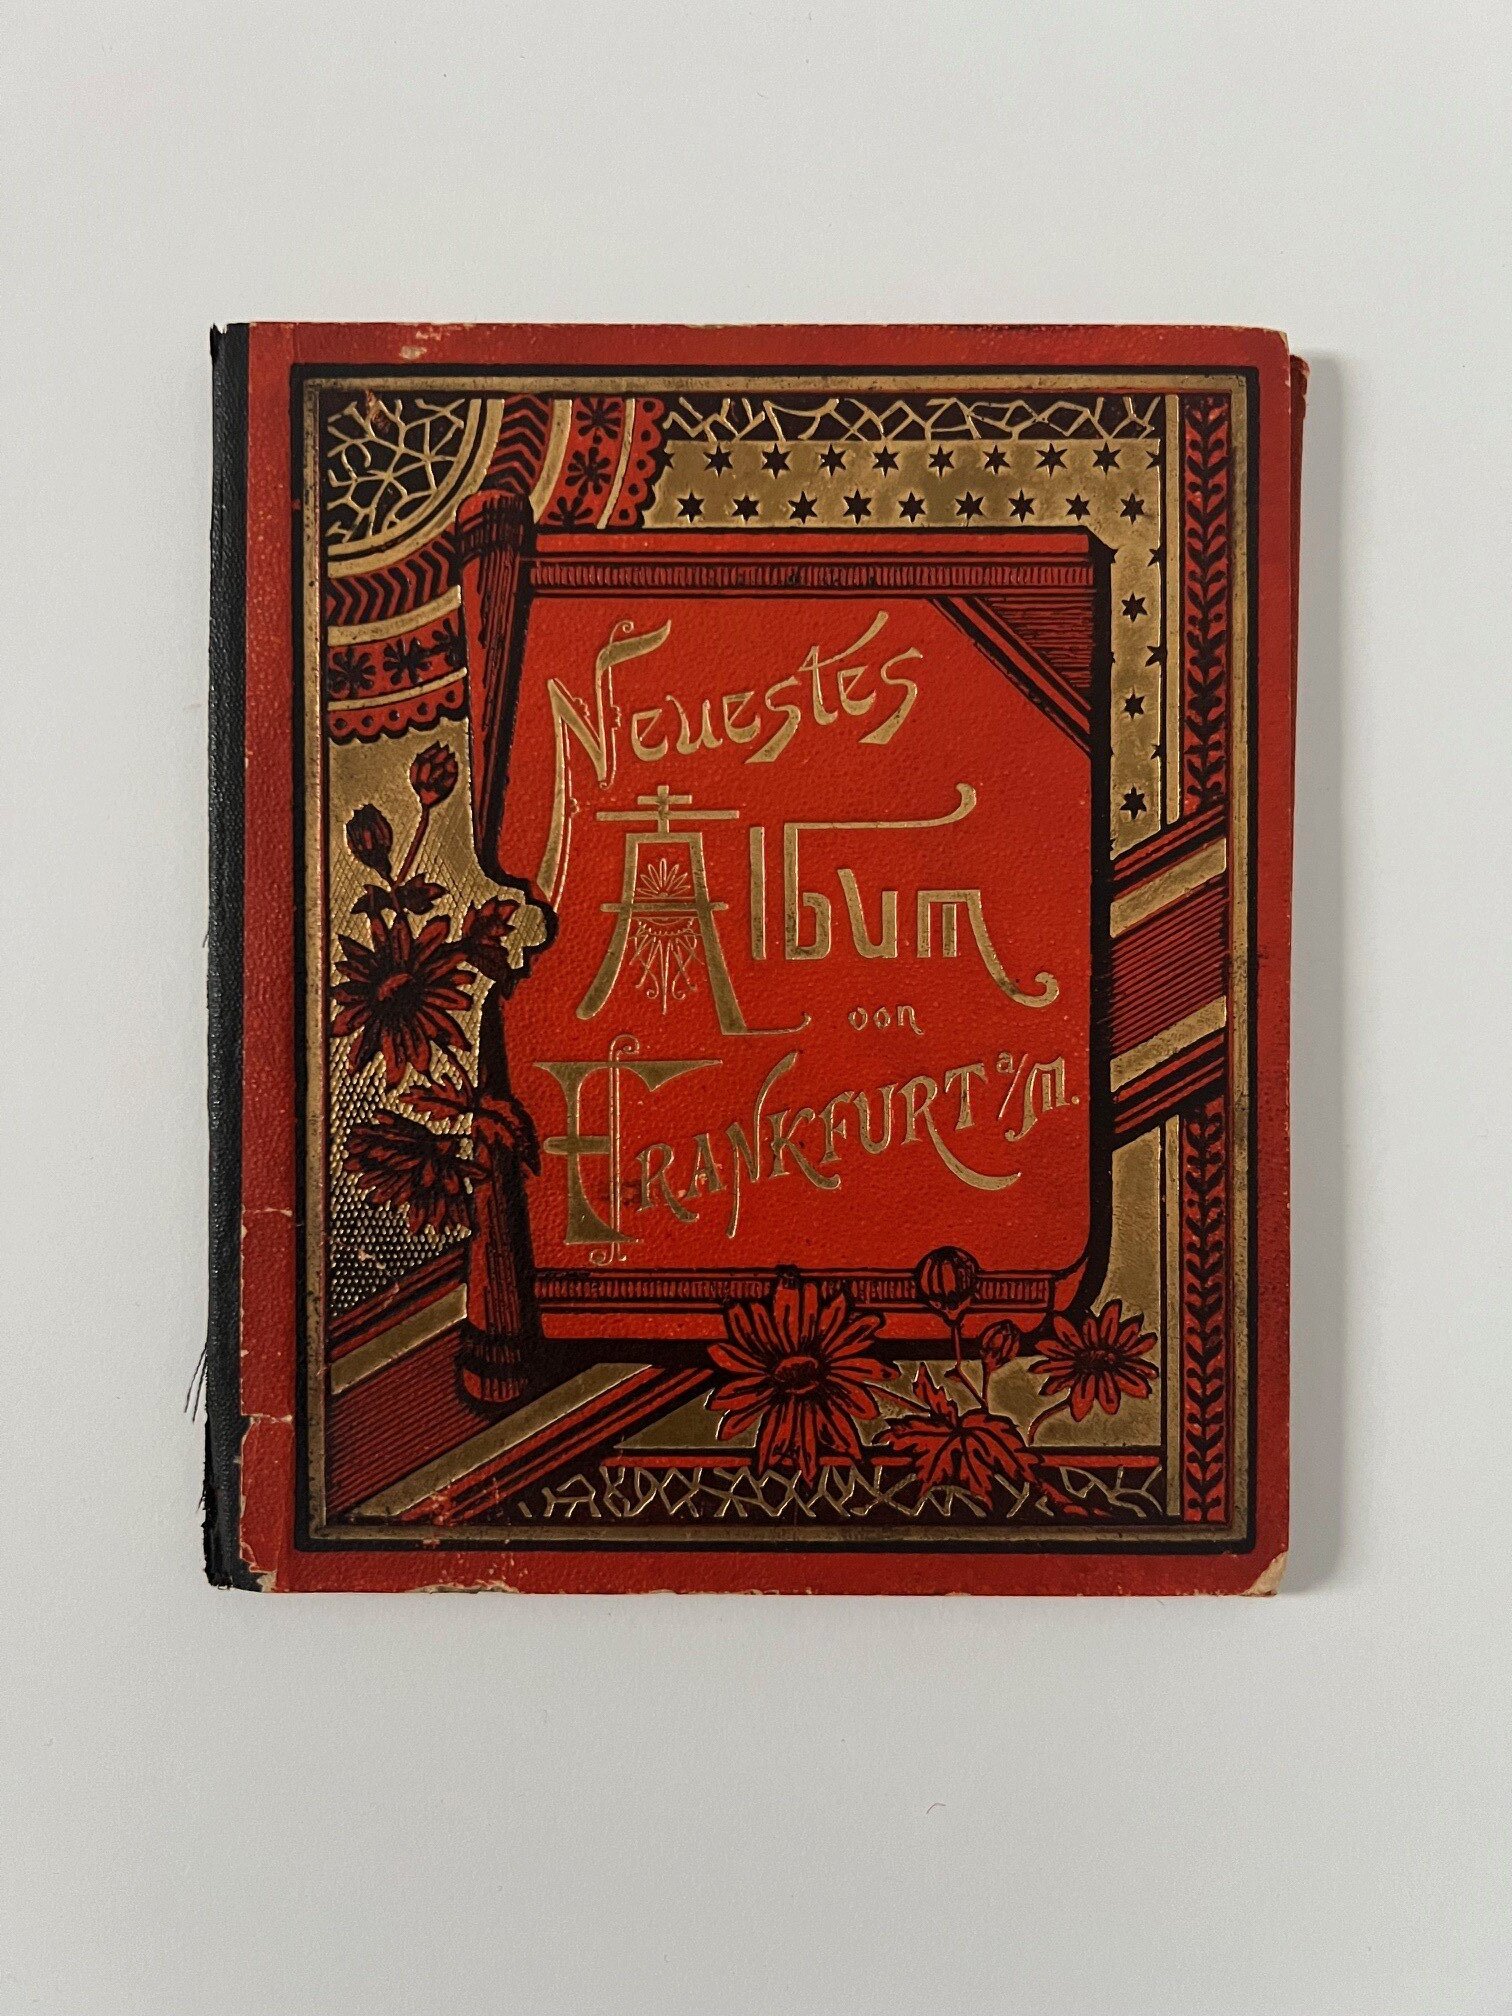 Philipp Frey, Neustes Album von Frankfurt a. M., Leporello mit 22 Lithographien, ca. 1900. (Taunus-Rhein-Main - Regionalgeschichtliche Sammlung Dr. Stefan Naas CC BY-NC-SA)